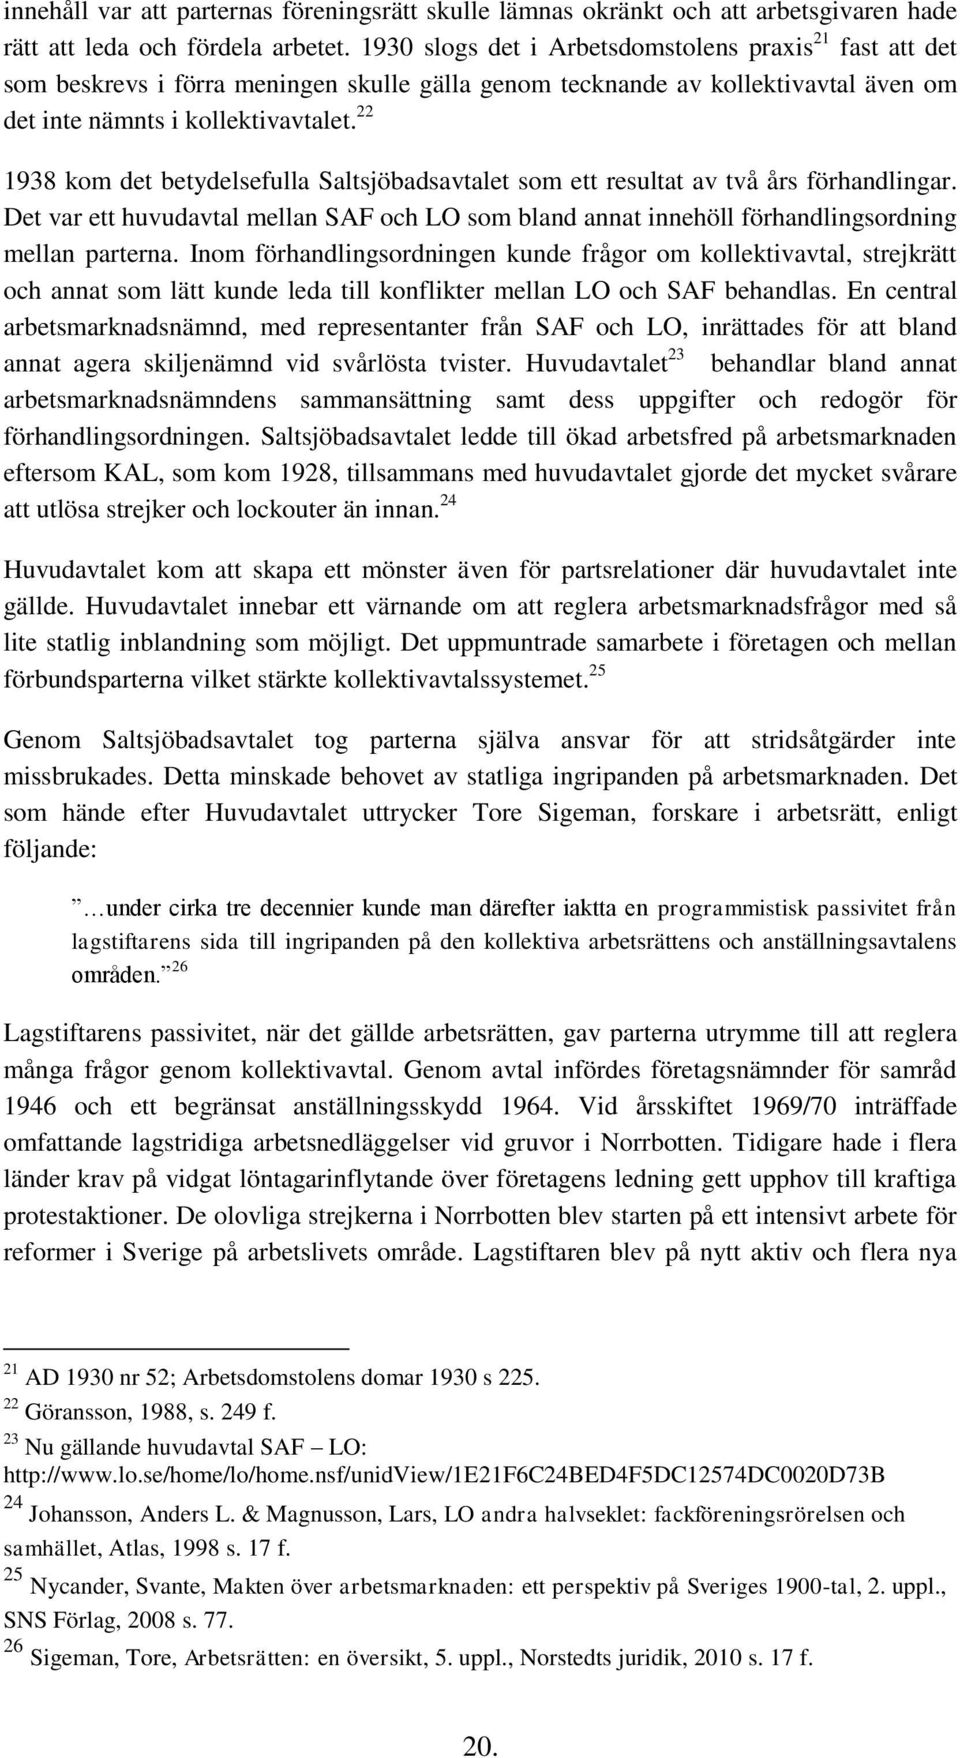 22 1938 kom det betydelsefulla Saltsjöbadsavtalet som ett resultat av två års förhandlingar. Det var ett huvudavtal mellan SAF och LO som bland annat innehöll förhandlingsordning mellan parterna.